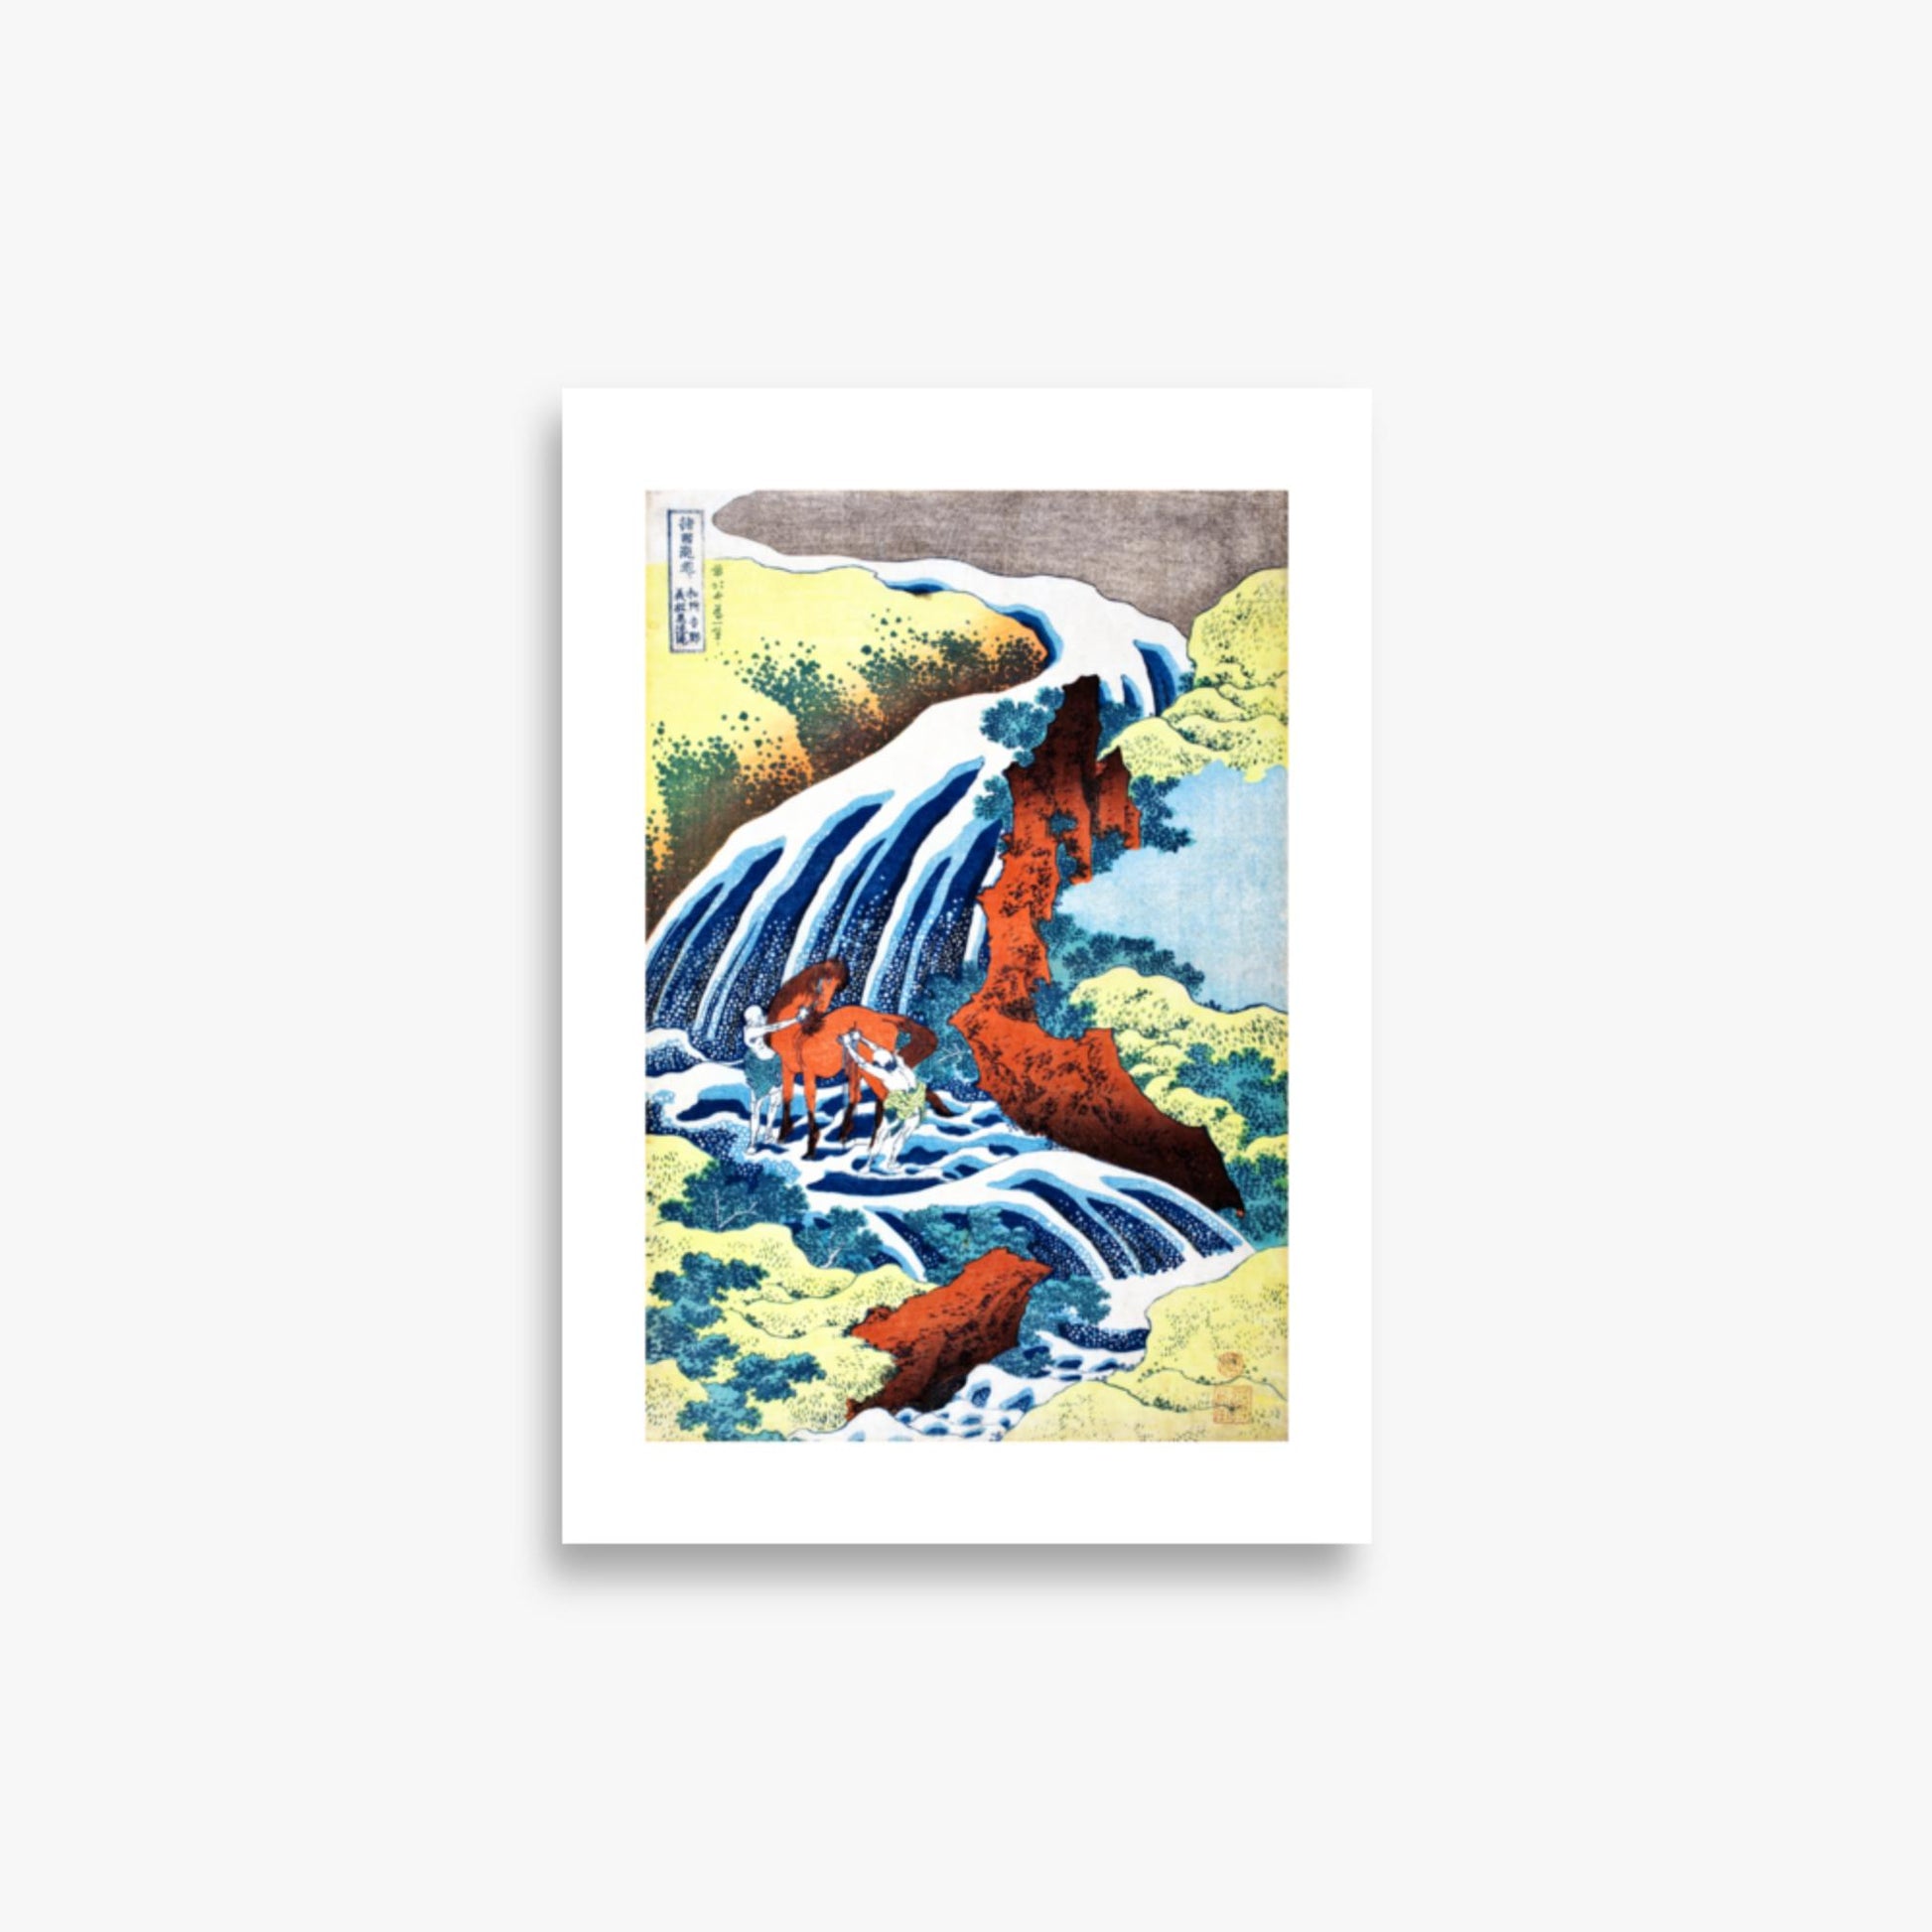 Katsushika Hokusai - The Yoshitsune Horse-Washing Falls at Yoshino, Izumi Province 21x30 cm Poster